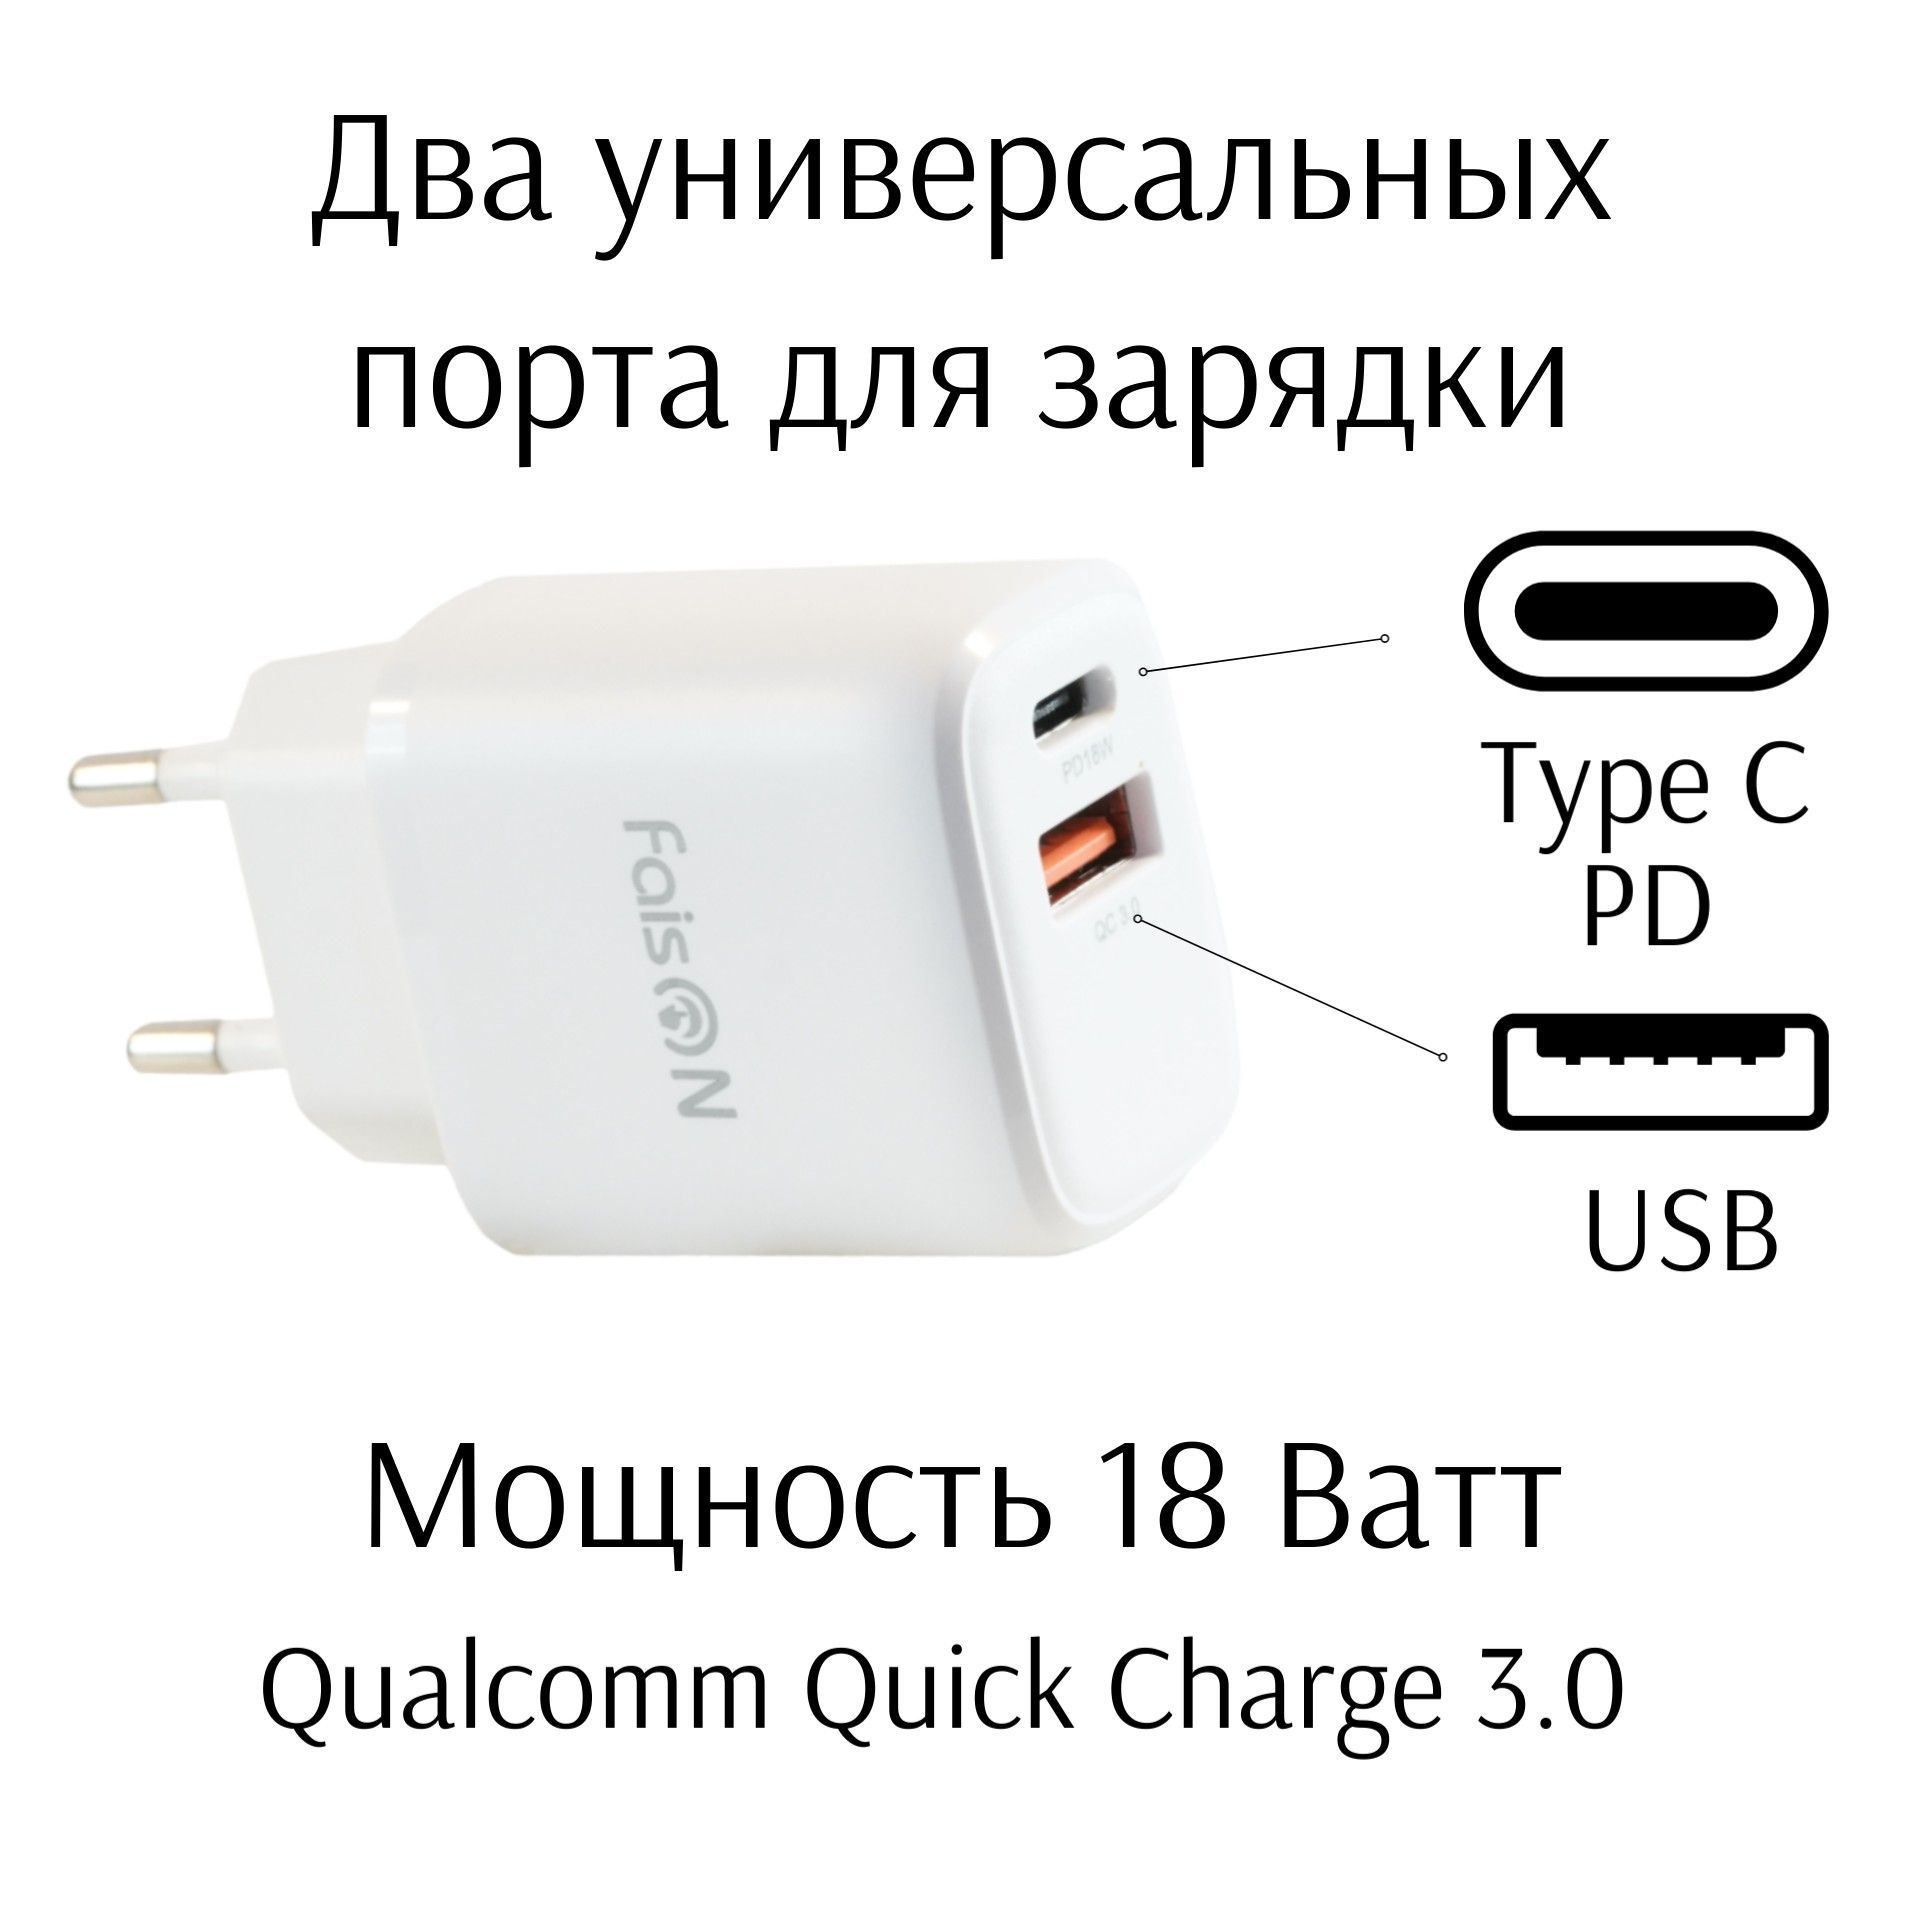 Юсбт + Пд. USB PD. Купить капельки для быстрой зарядки Meizu Note 8 12 вольт 2 Ампера. Pd 3.0 зарядное